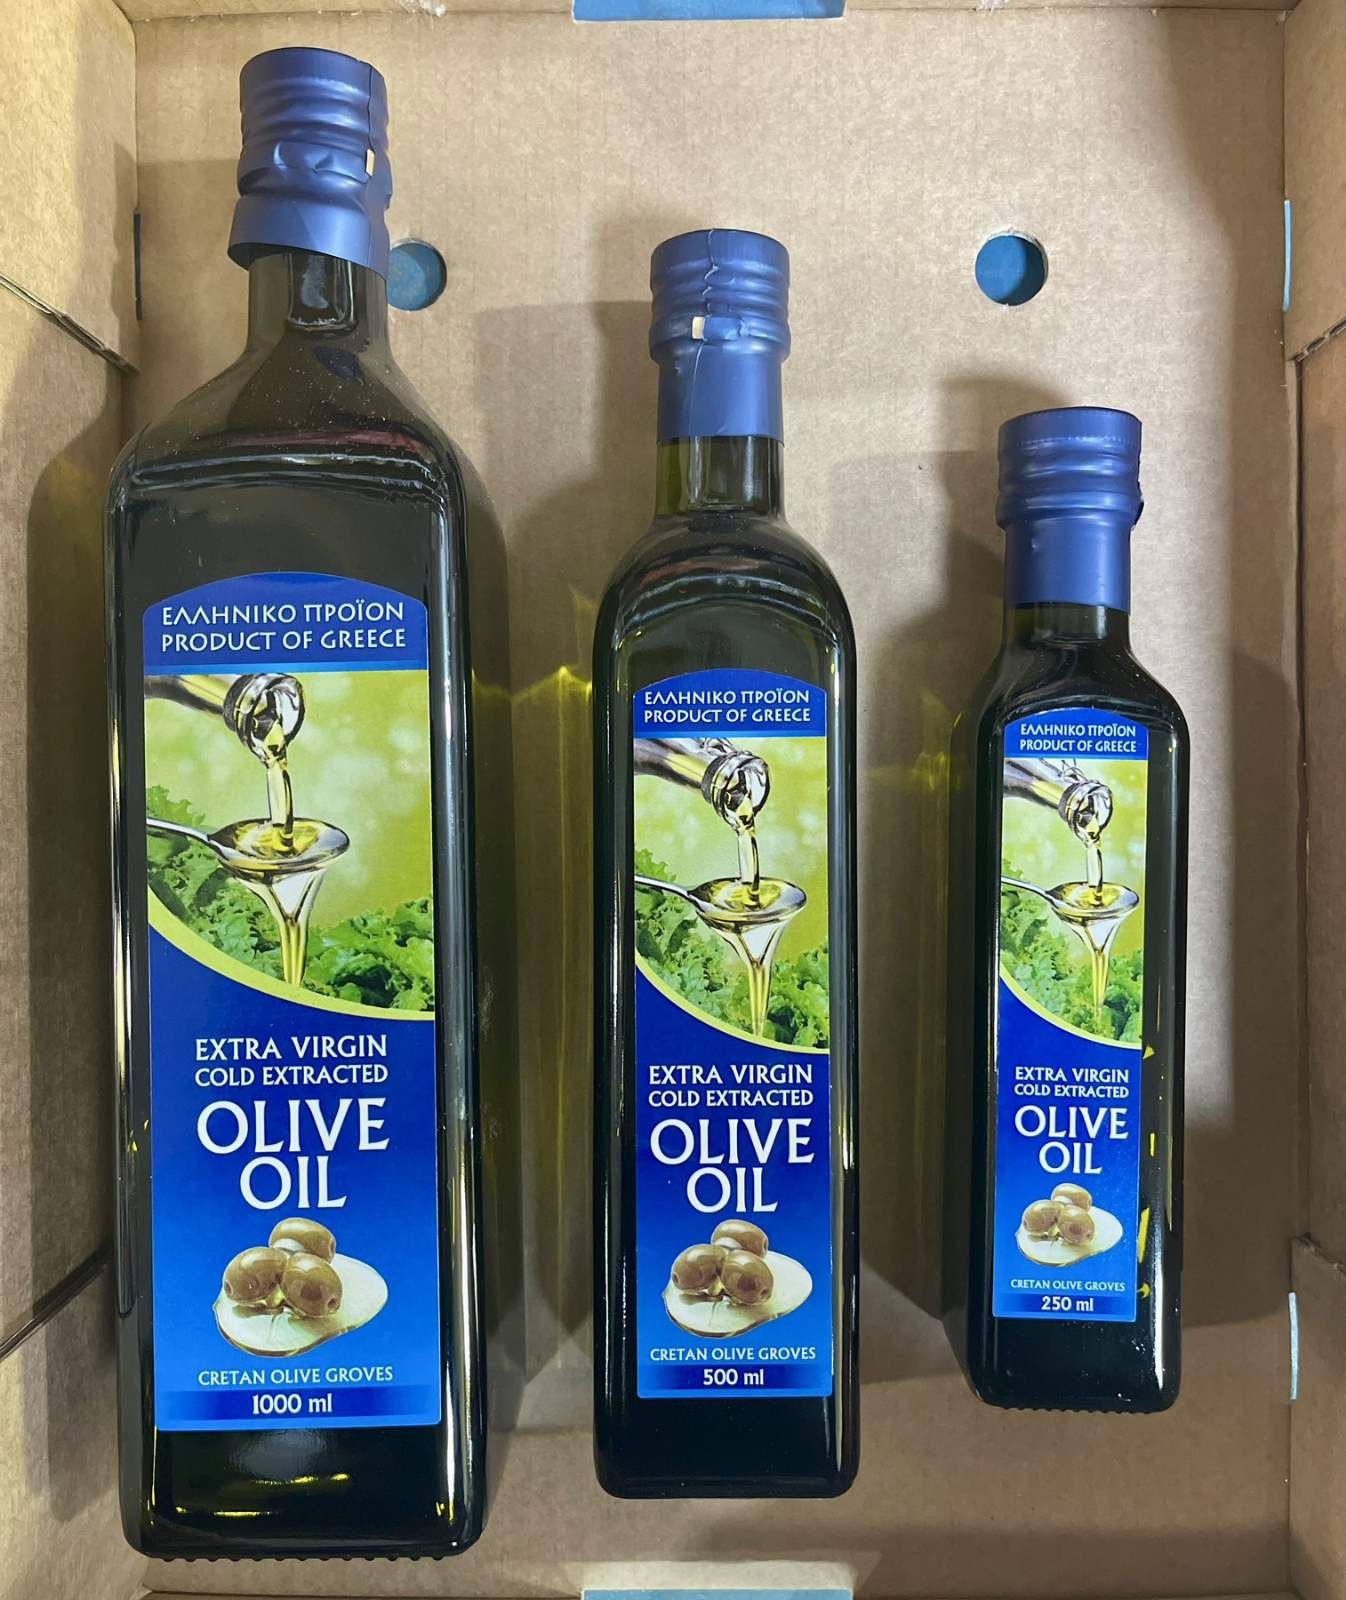 Оливкова олія ,великий асортимент, оптові ціни